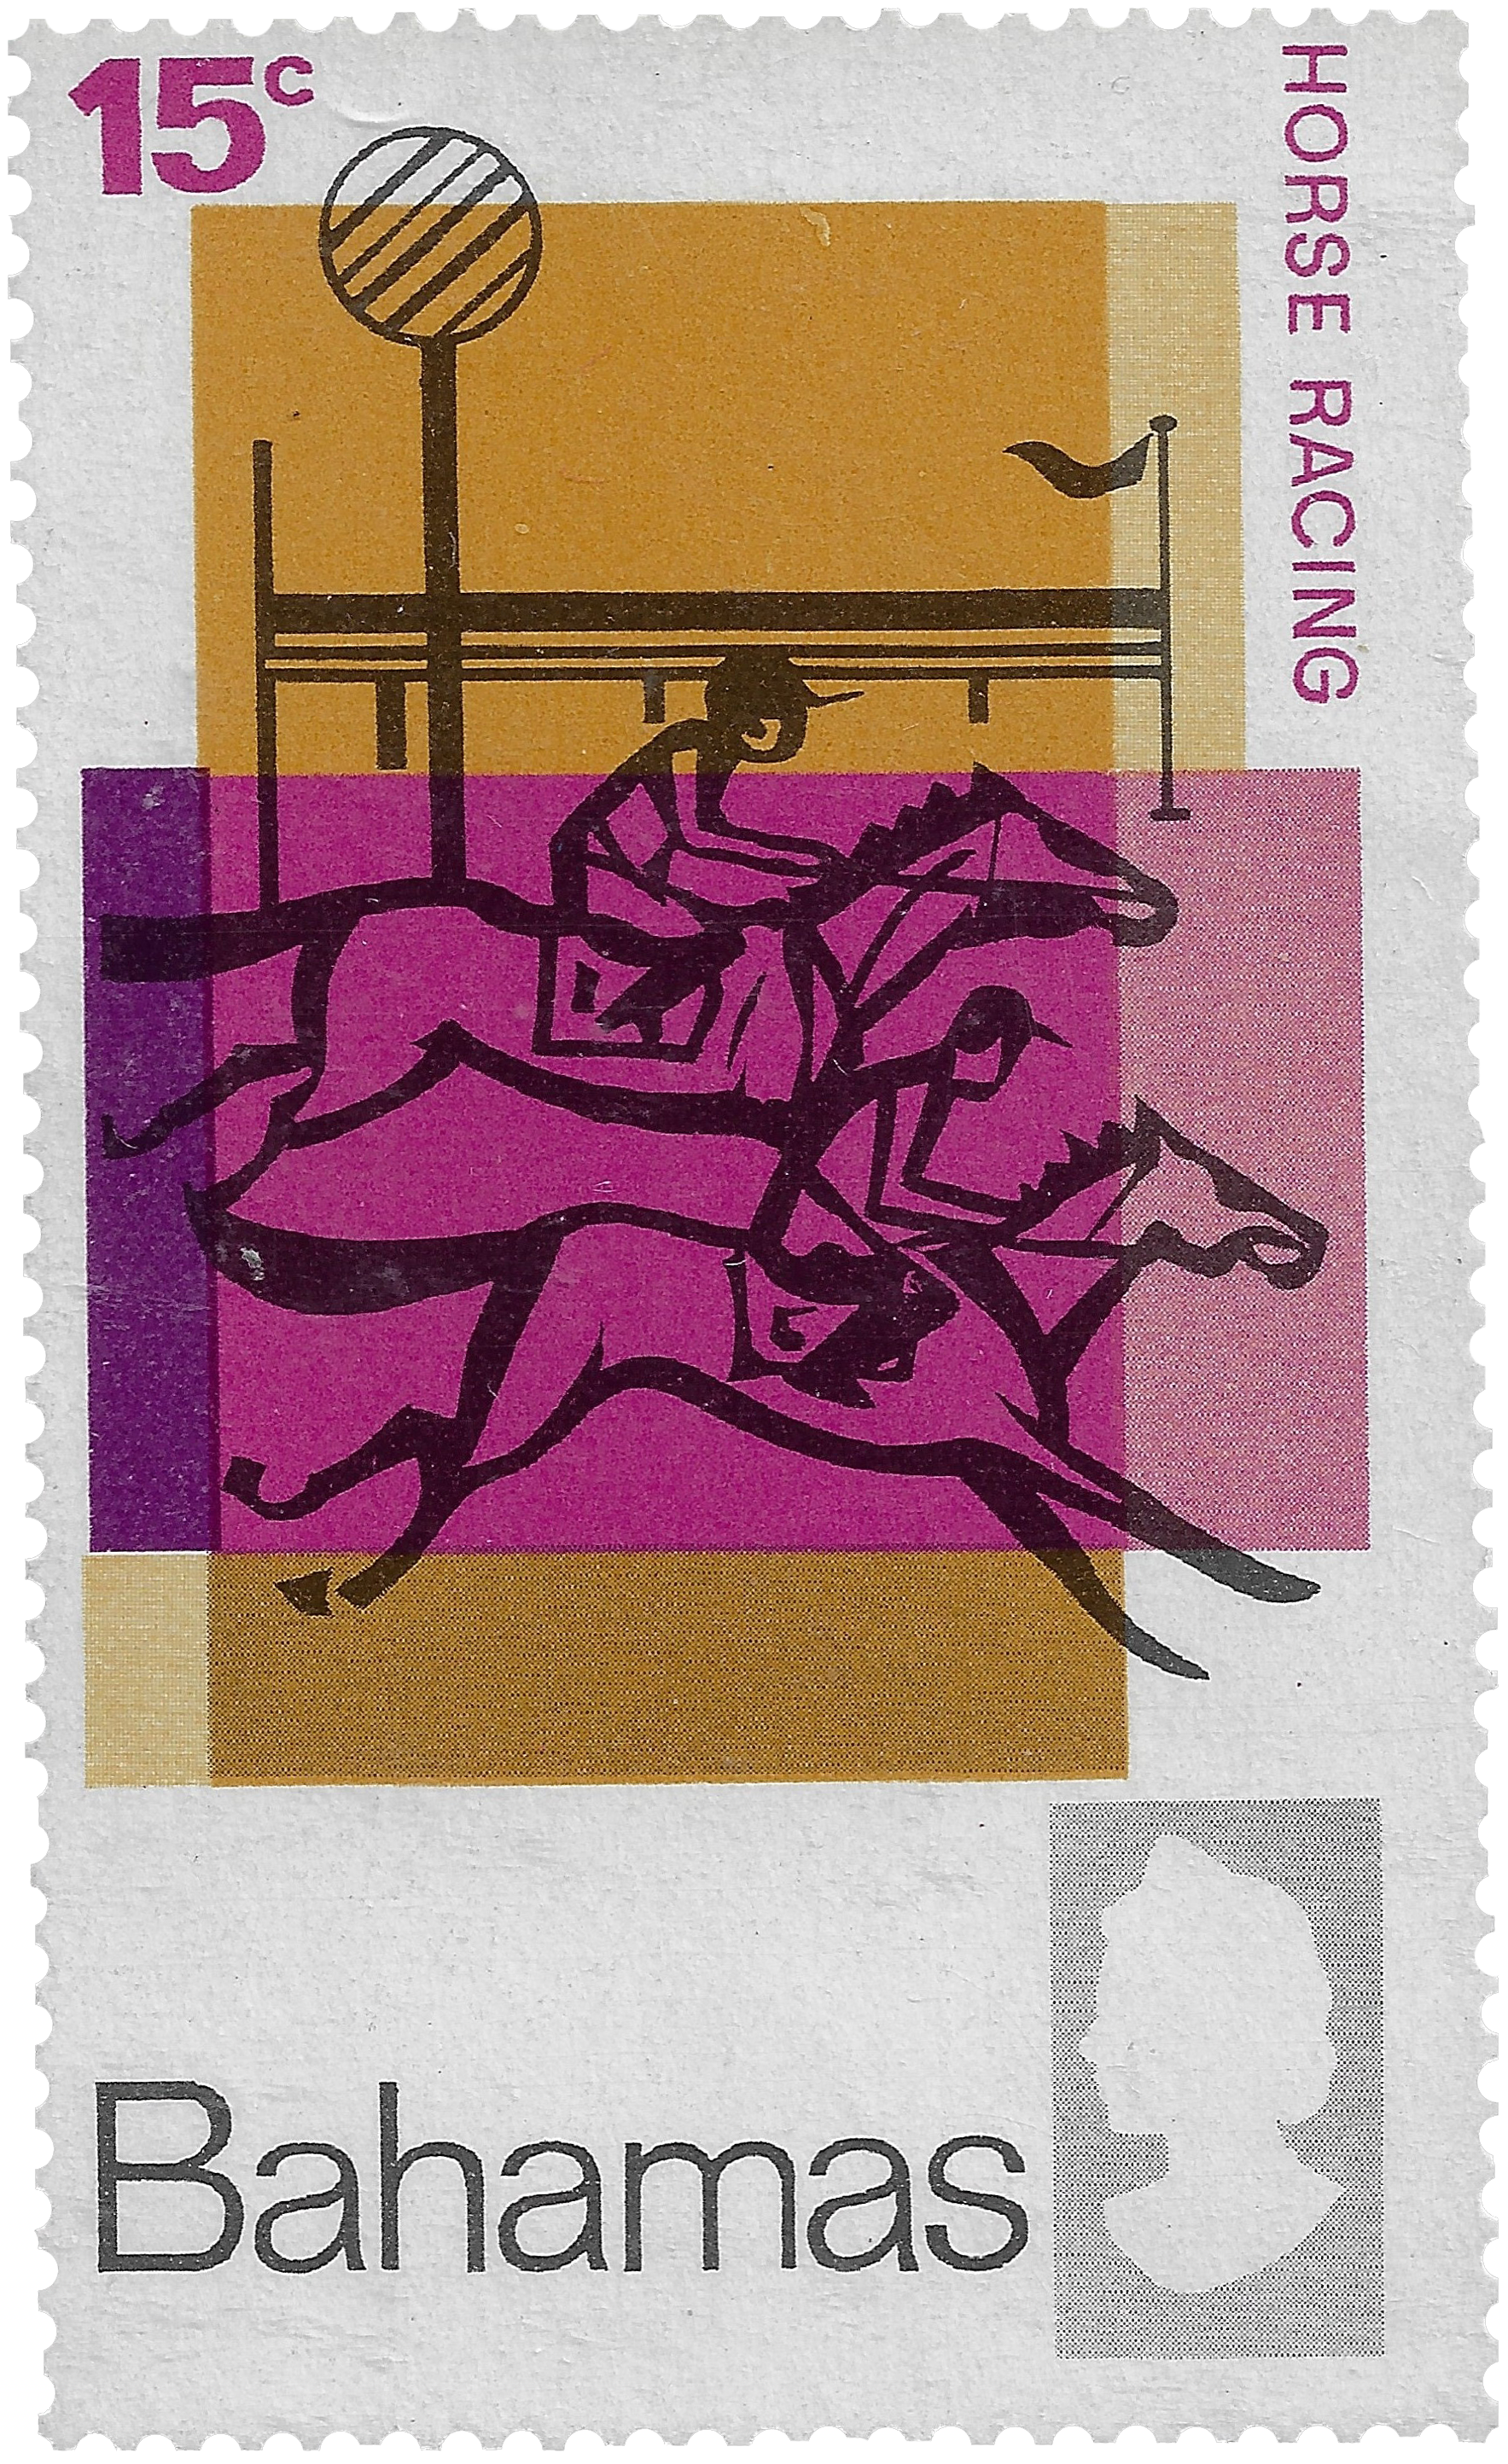 15c 1968, Horse Racing